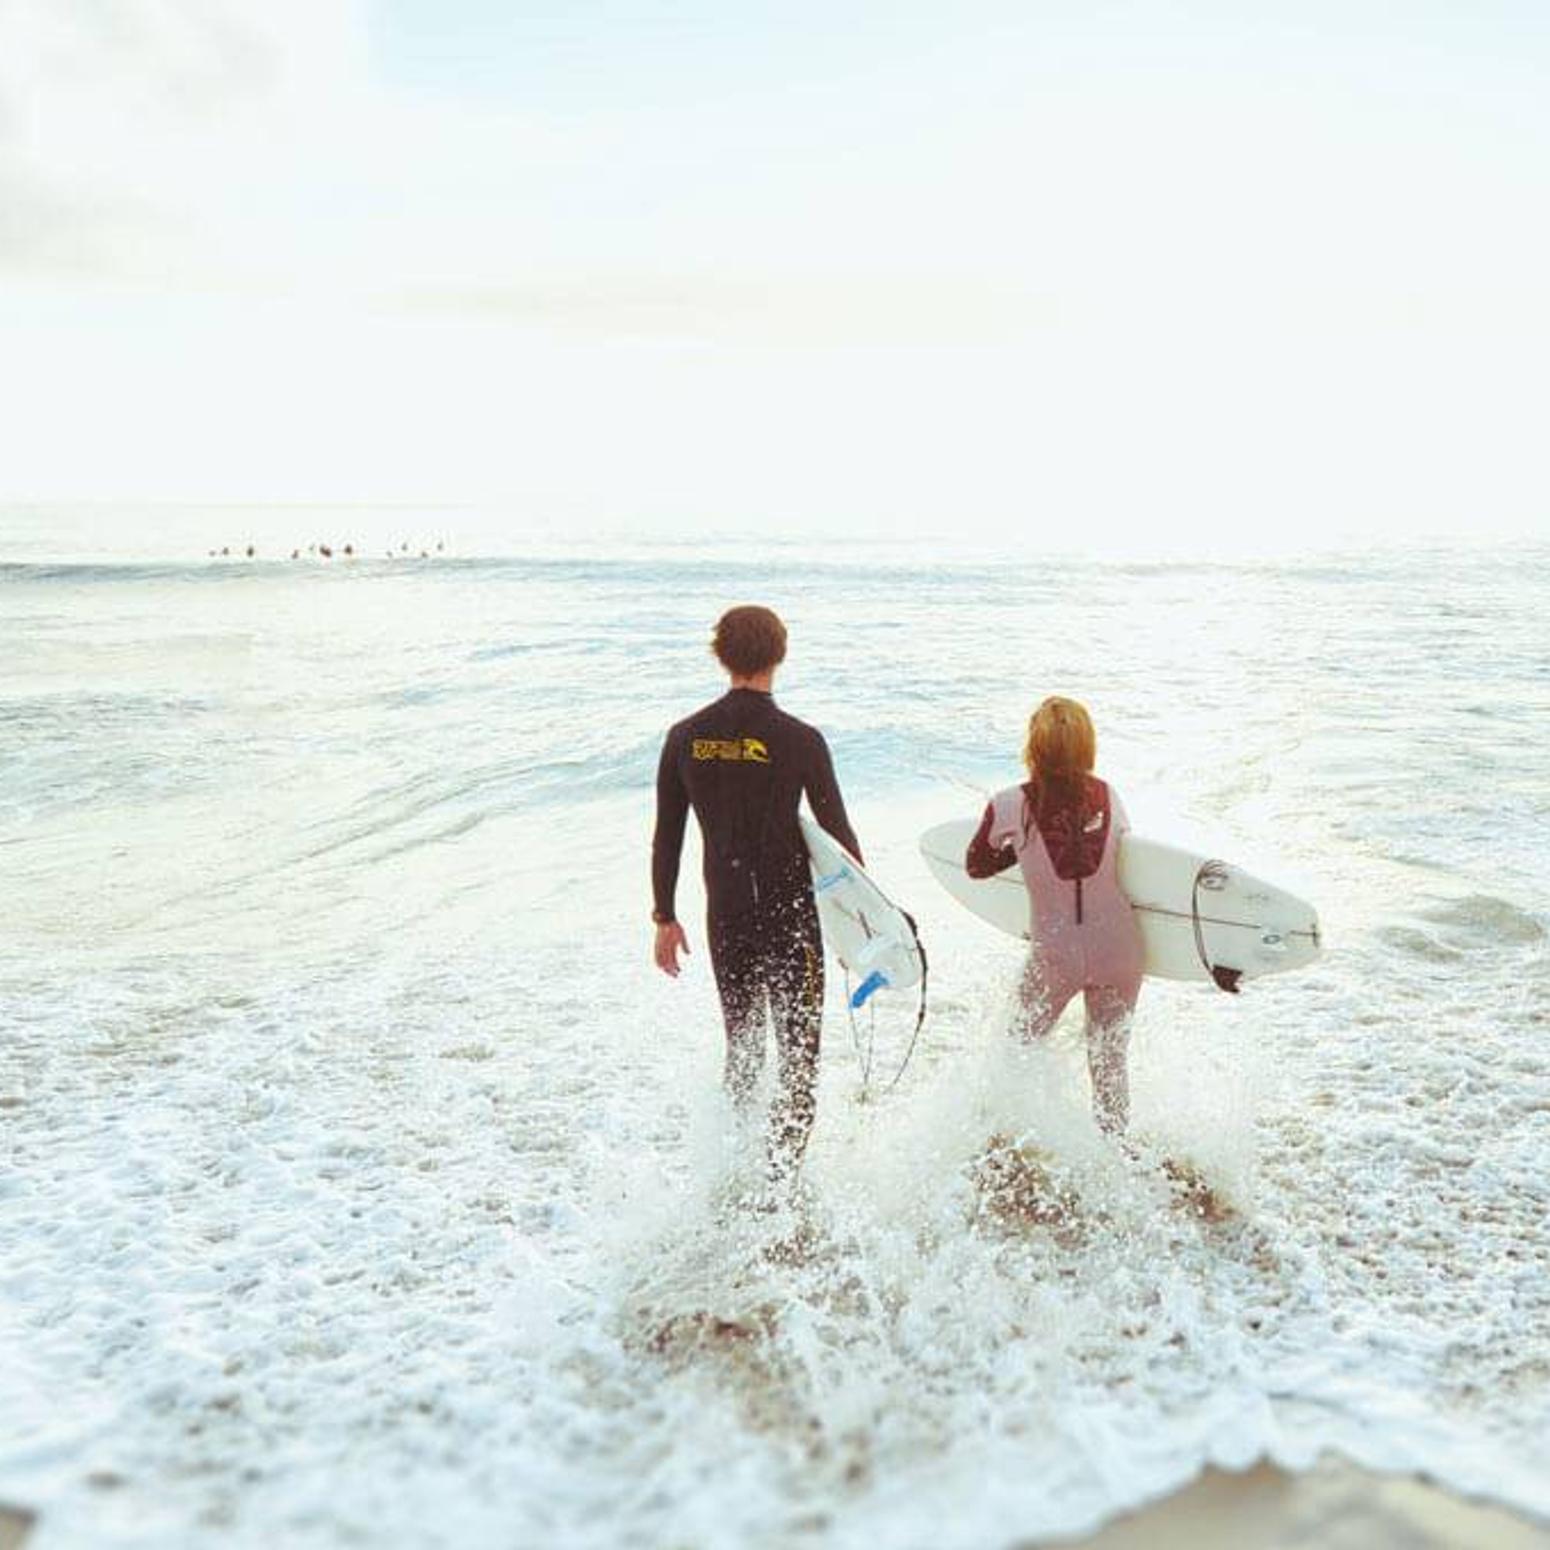 Bild von zwei Surfer die in das Meer laufen